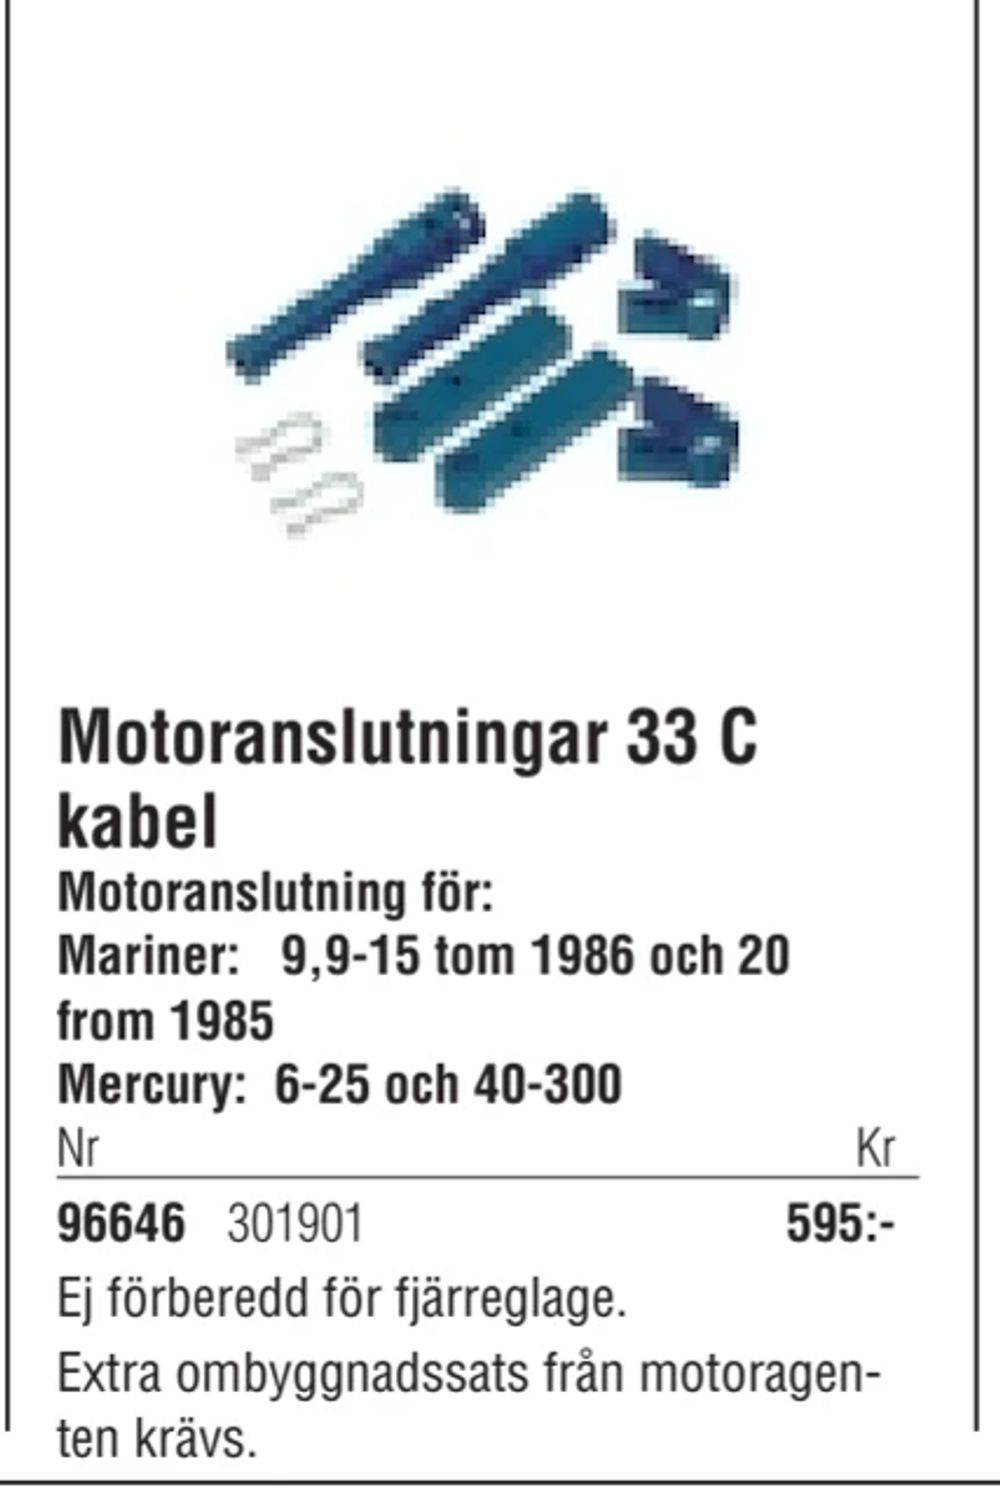 Erbjudanden på Motoranslutningar 33 C kabel från Erlandsons Brygga för 595 kr